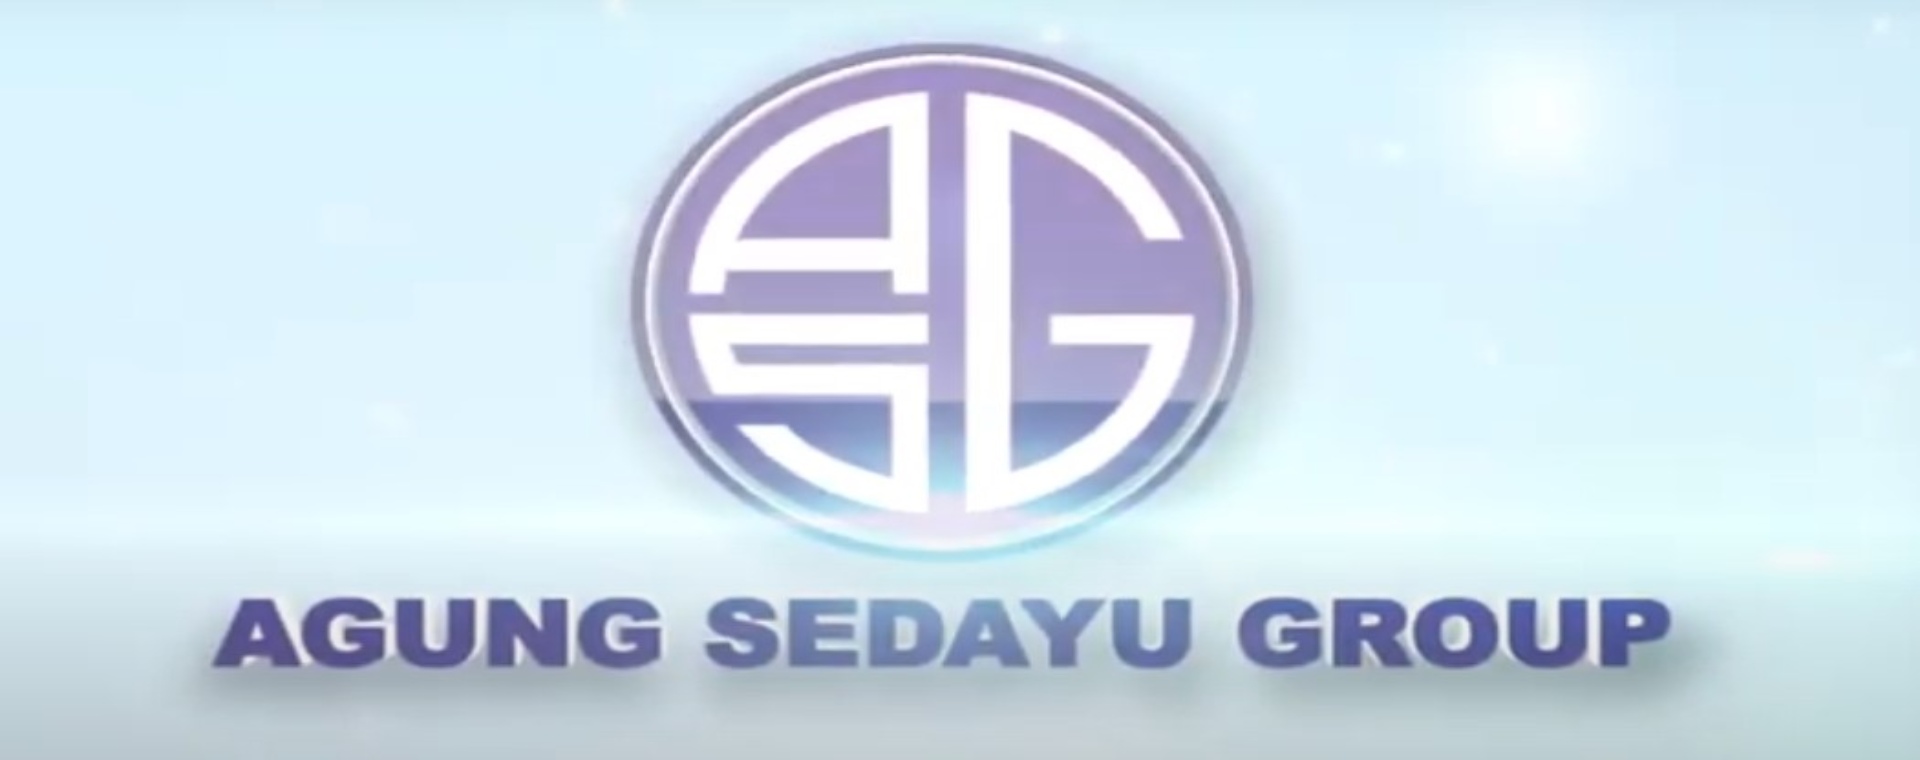 Logo Agung Sedayu Group - Istimewa 